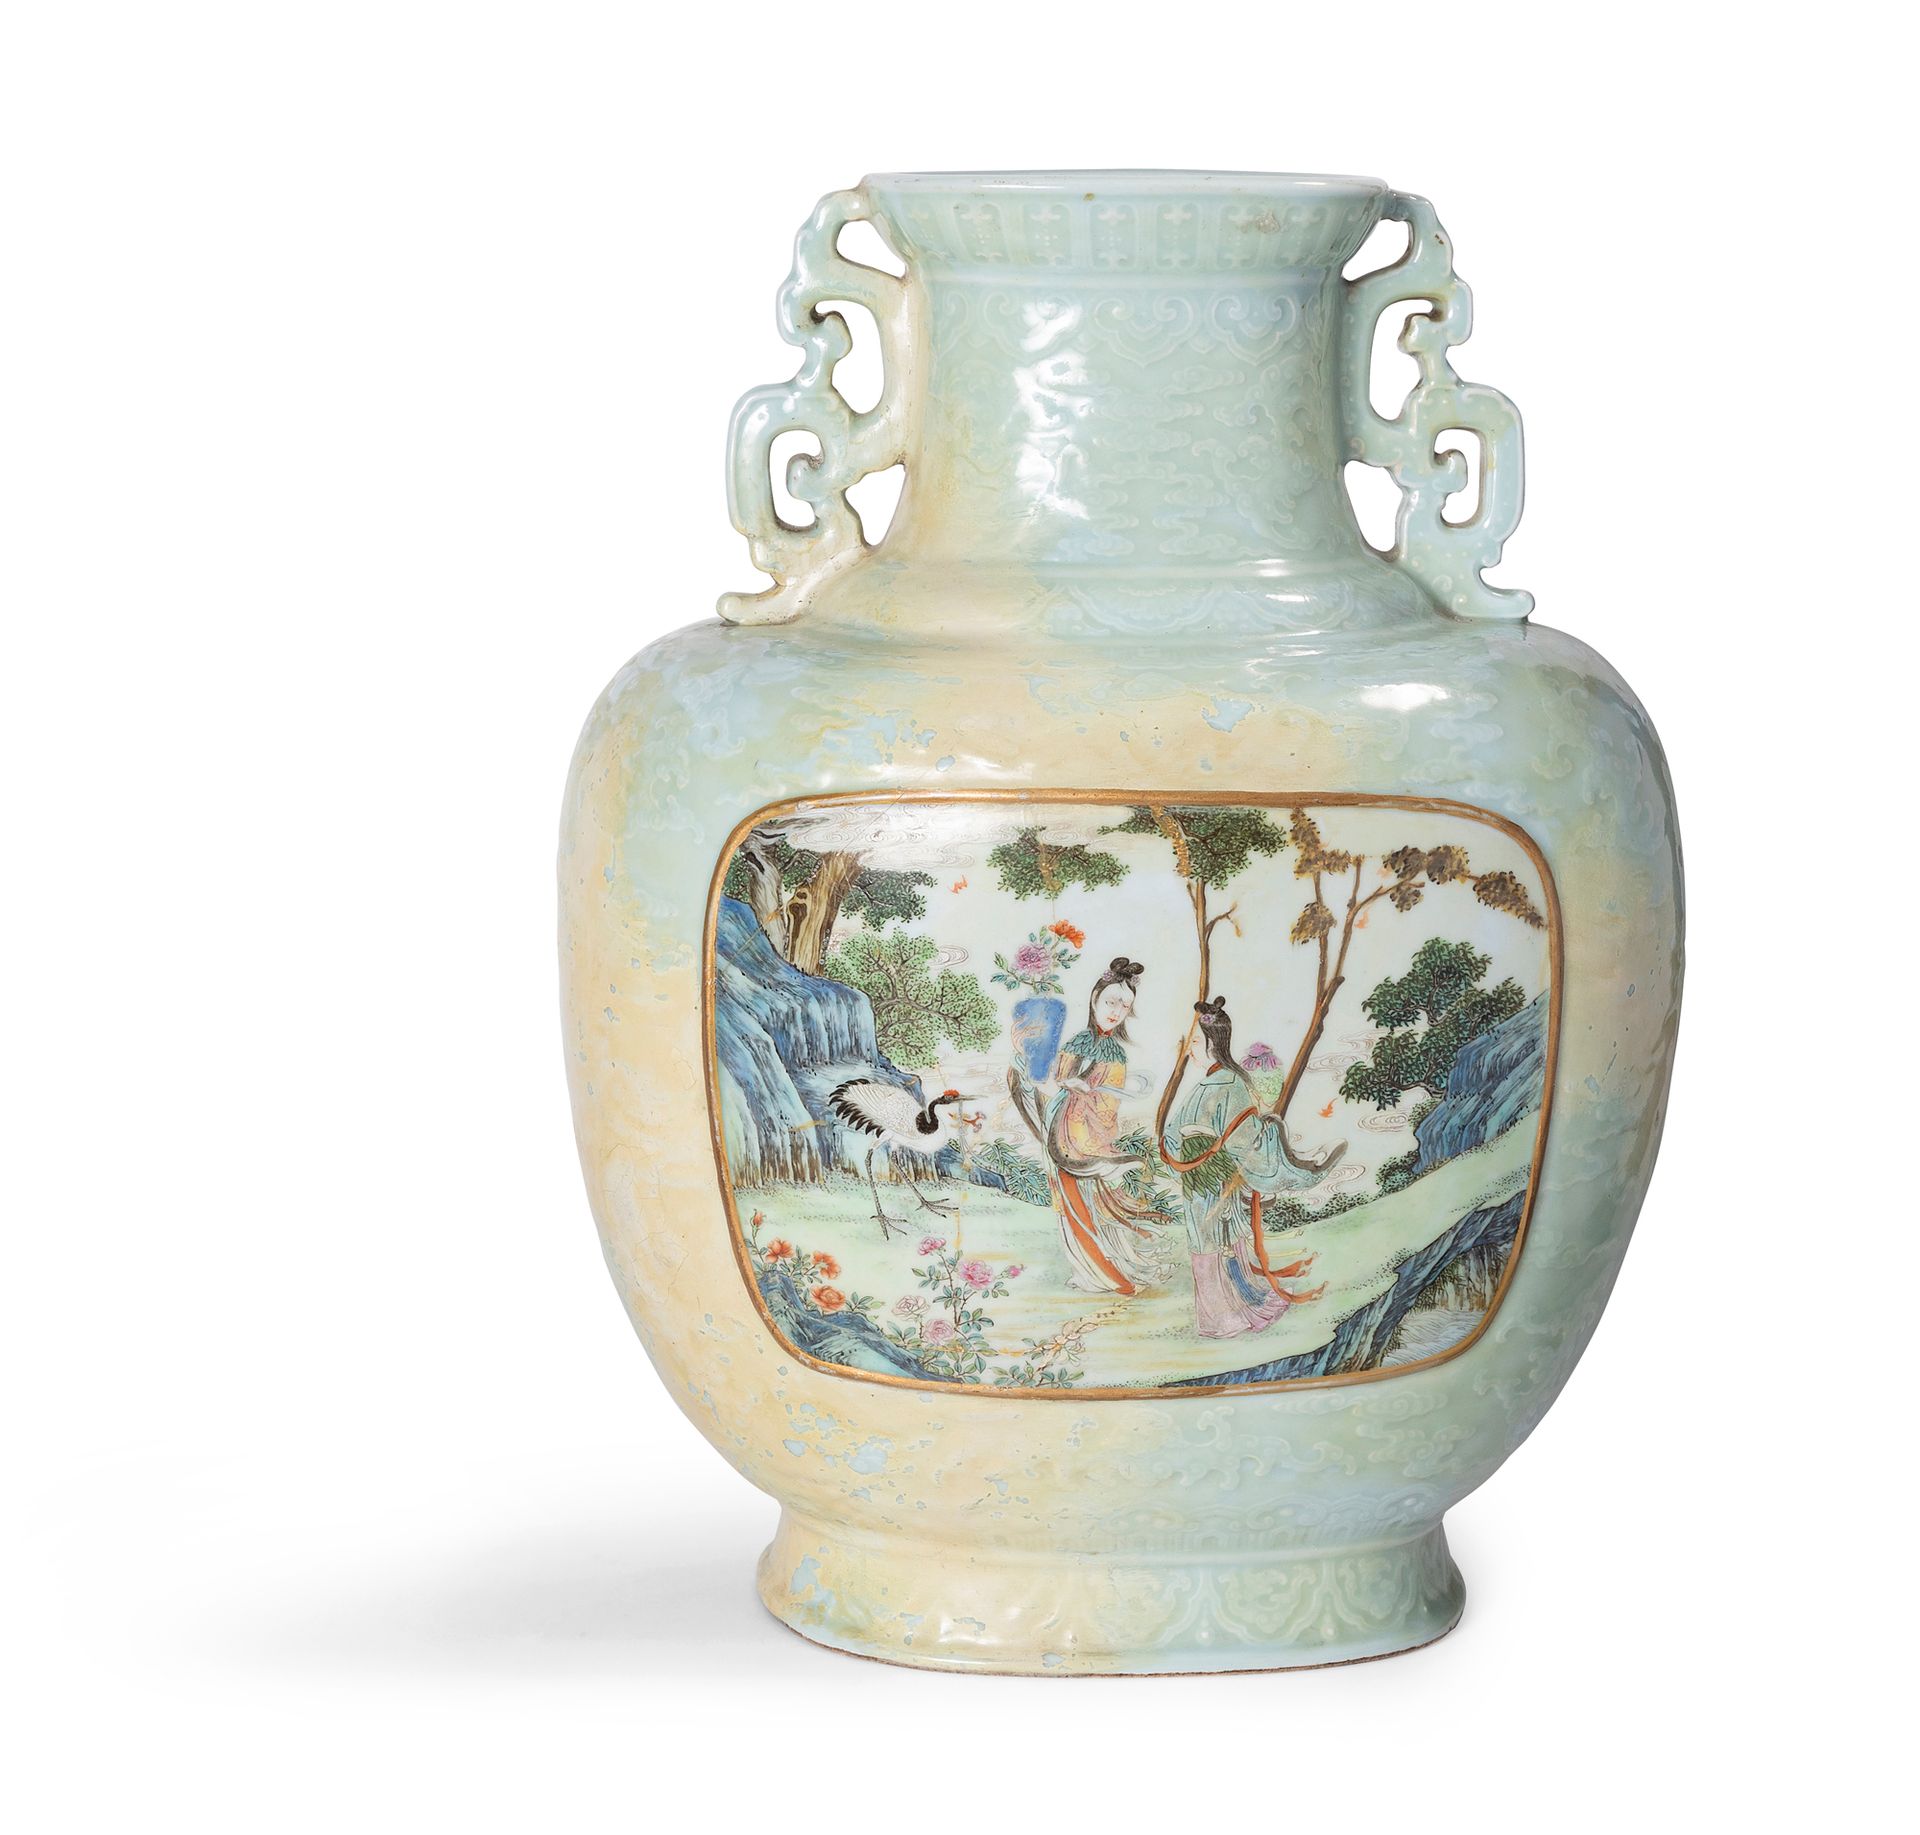 Null China, siglo XVIII

Jarrón de porcelana en forma de hu con decoración molde&hellip;